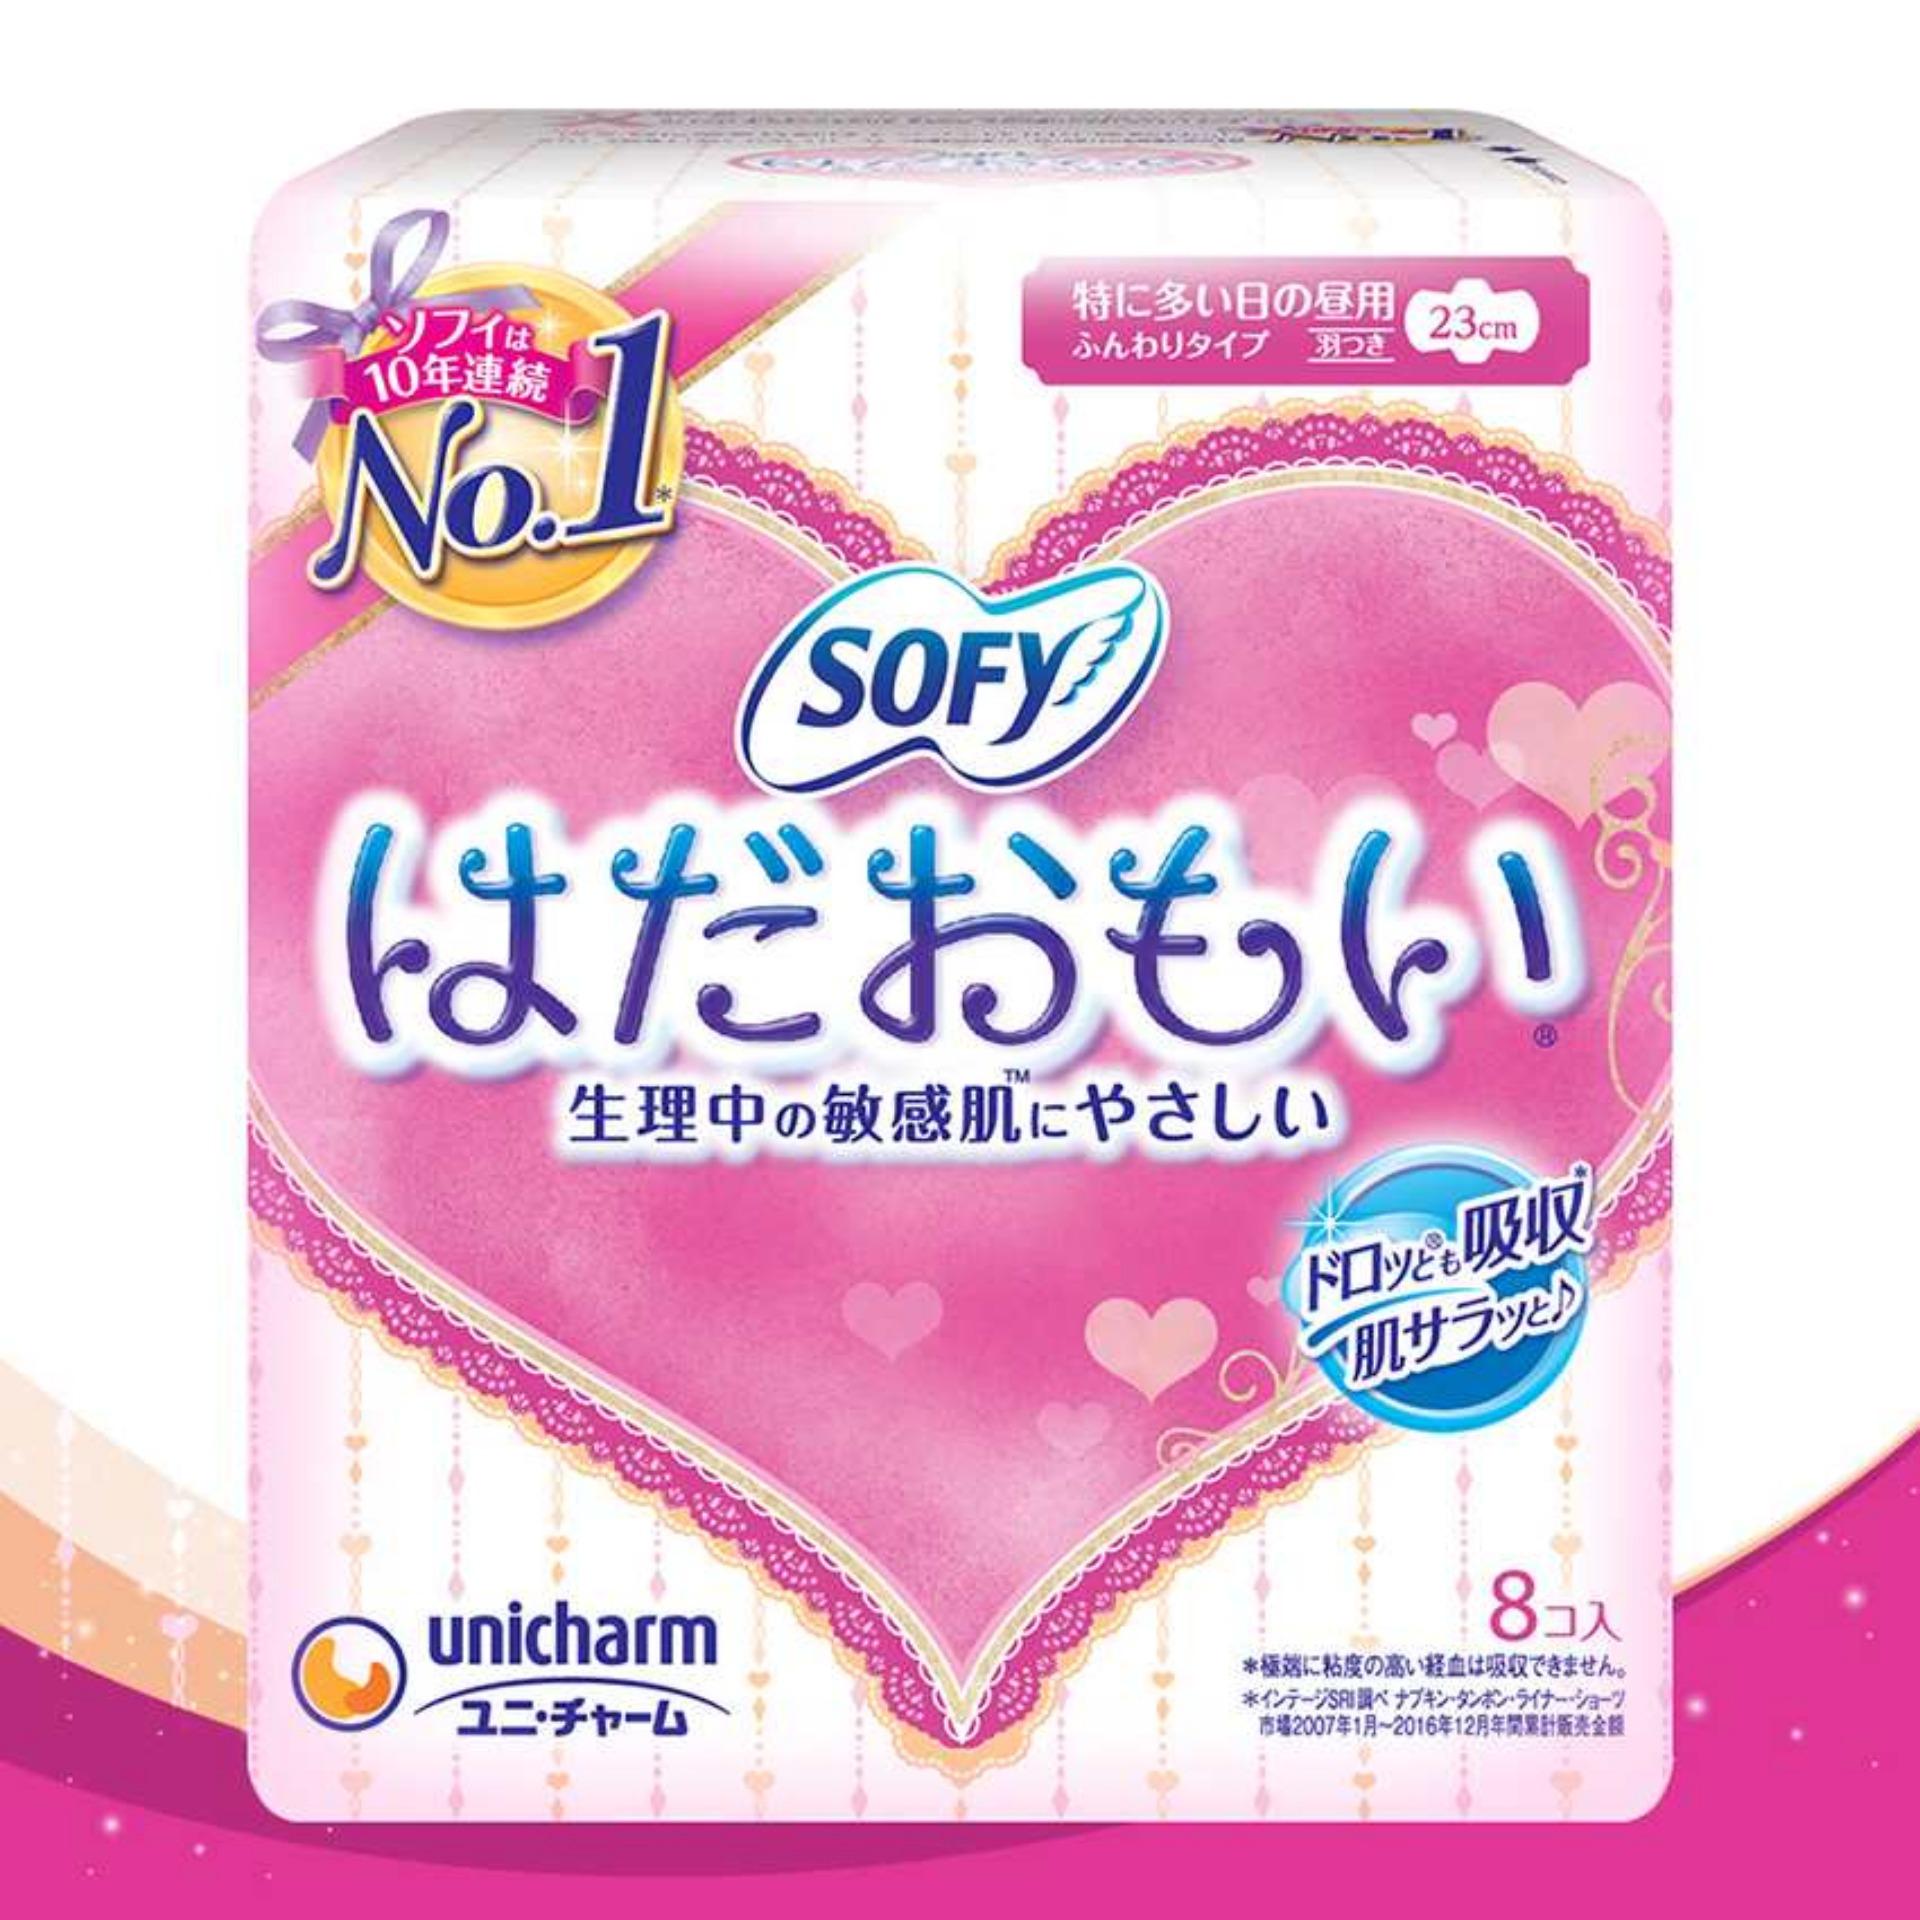 Băng vệ sinh siêu mềm mại Sofy Skin Comfort 23cm có cánh gói 08 miếng (Nhập khẩu từ Nhật Bản)...